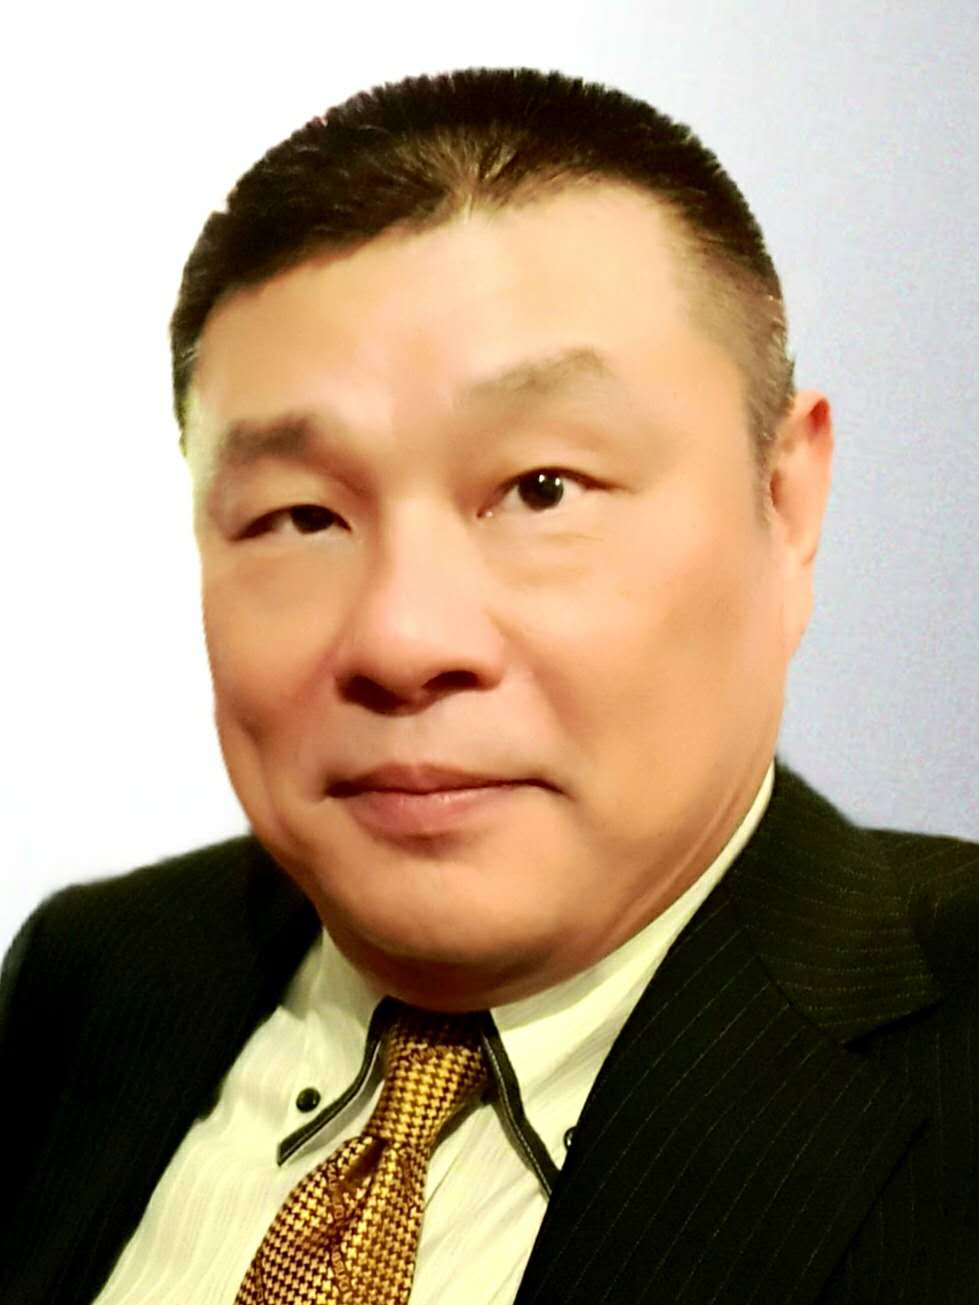 Mr. CHENG Wen-Hsien